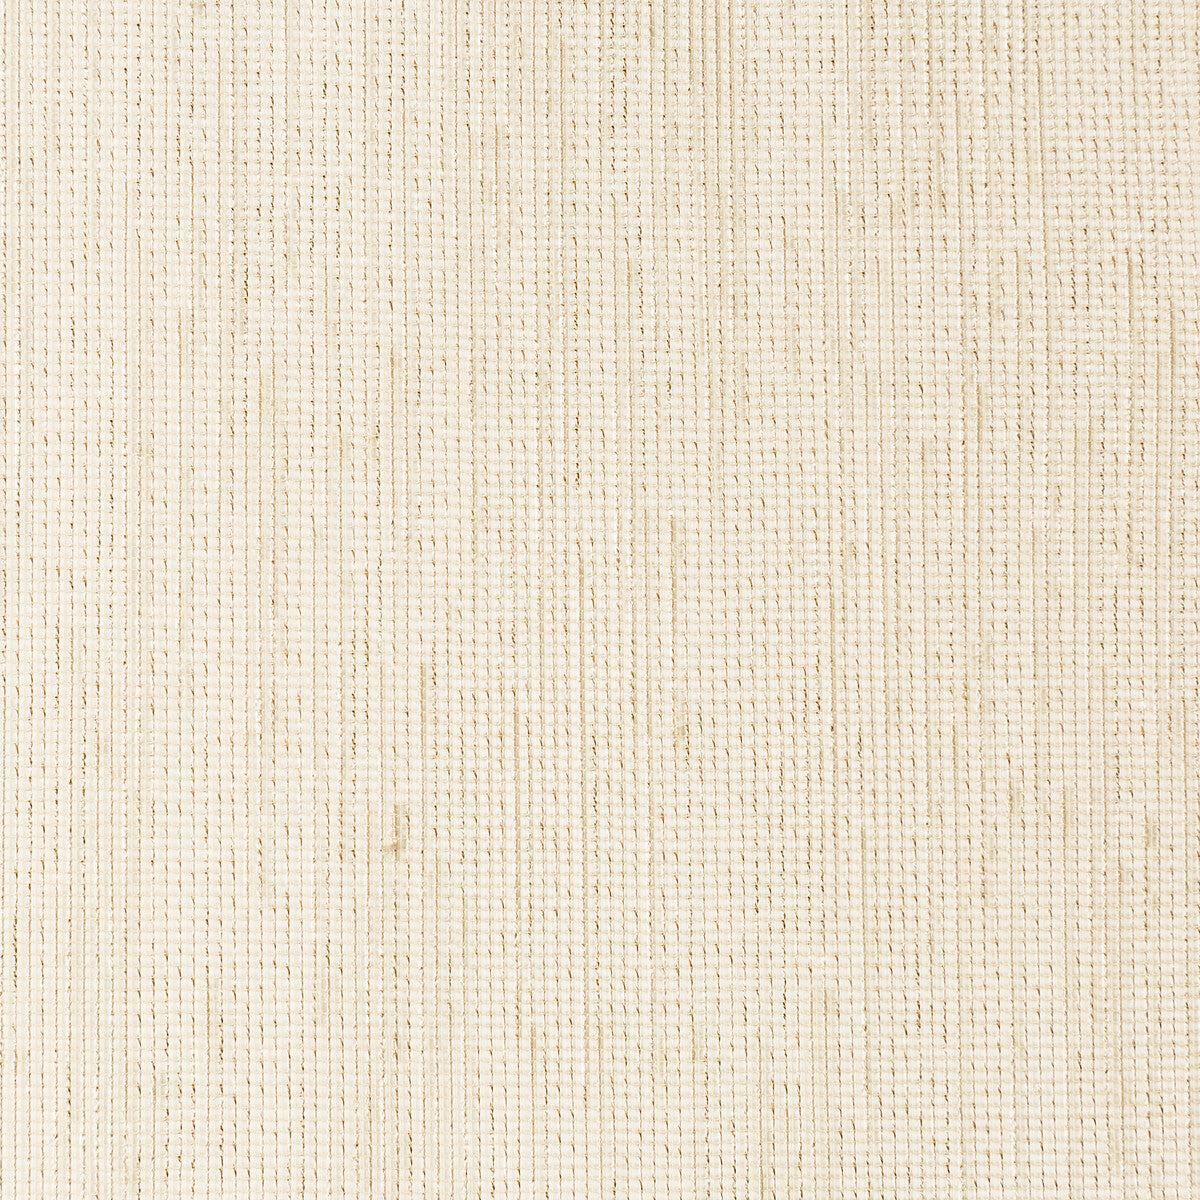 Kravet Basics fabric in 4767-16 color - pattern 4767.16.0 - by Kravet Basics